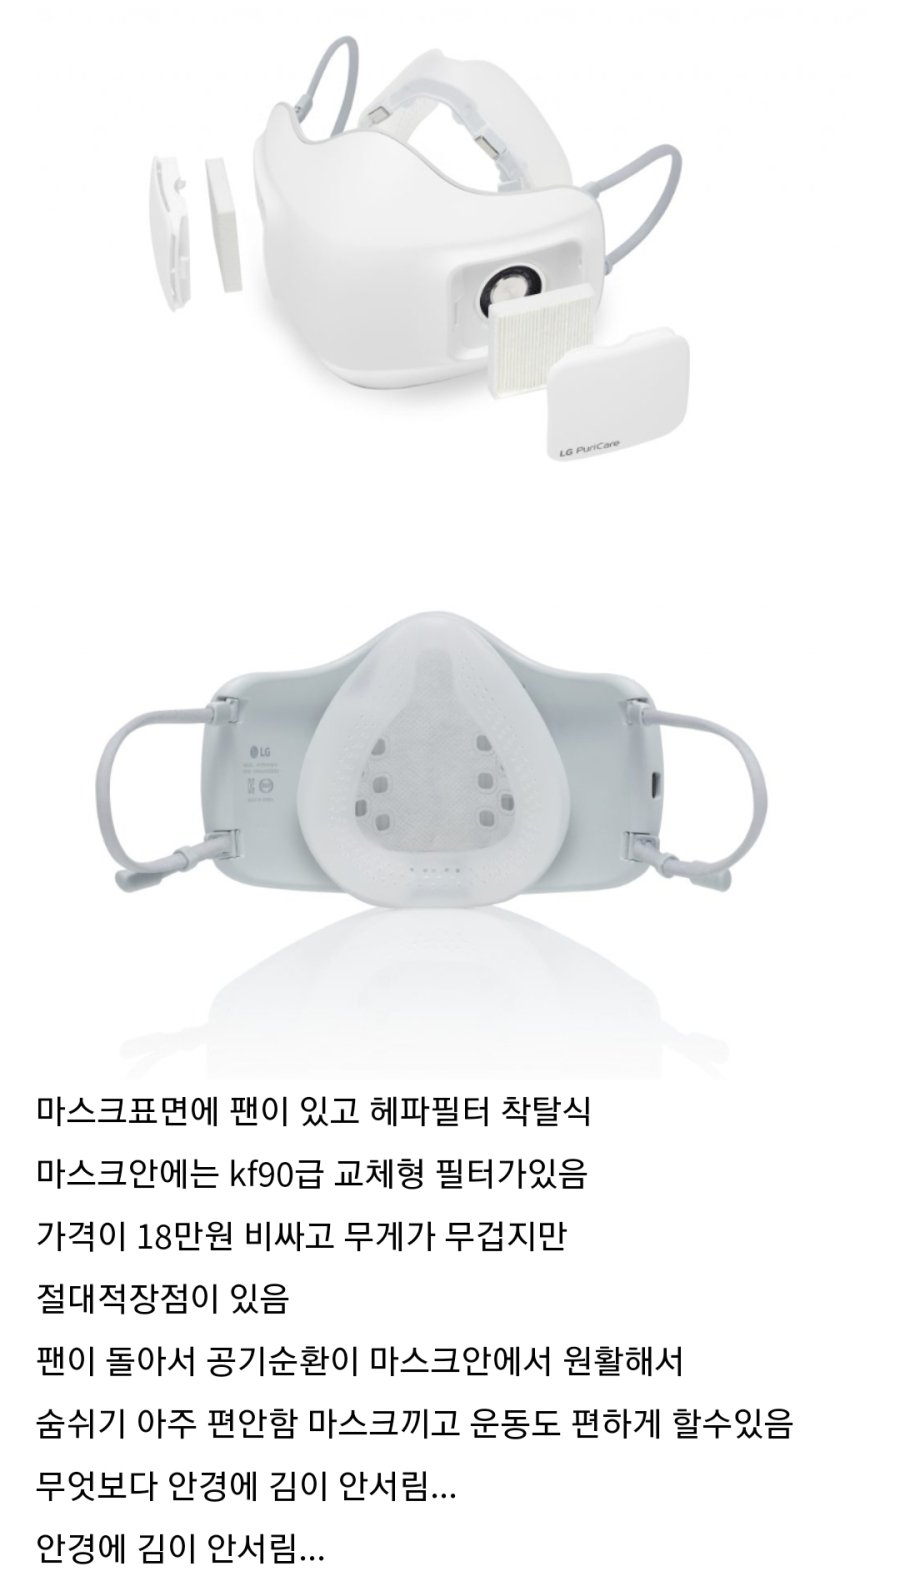 LG에서 만든 18만원짜리 마스크.jpg